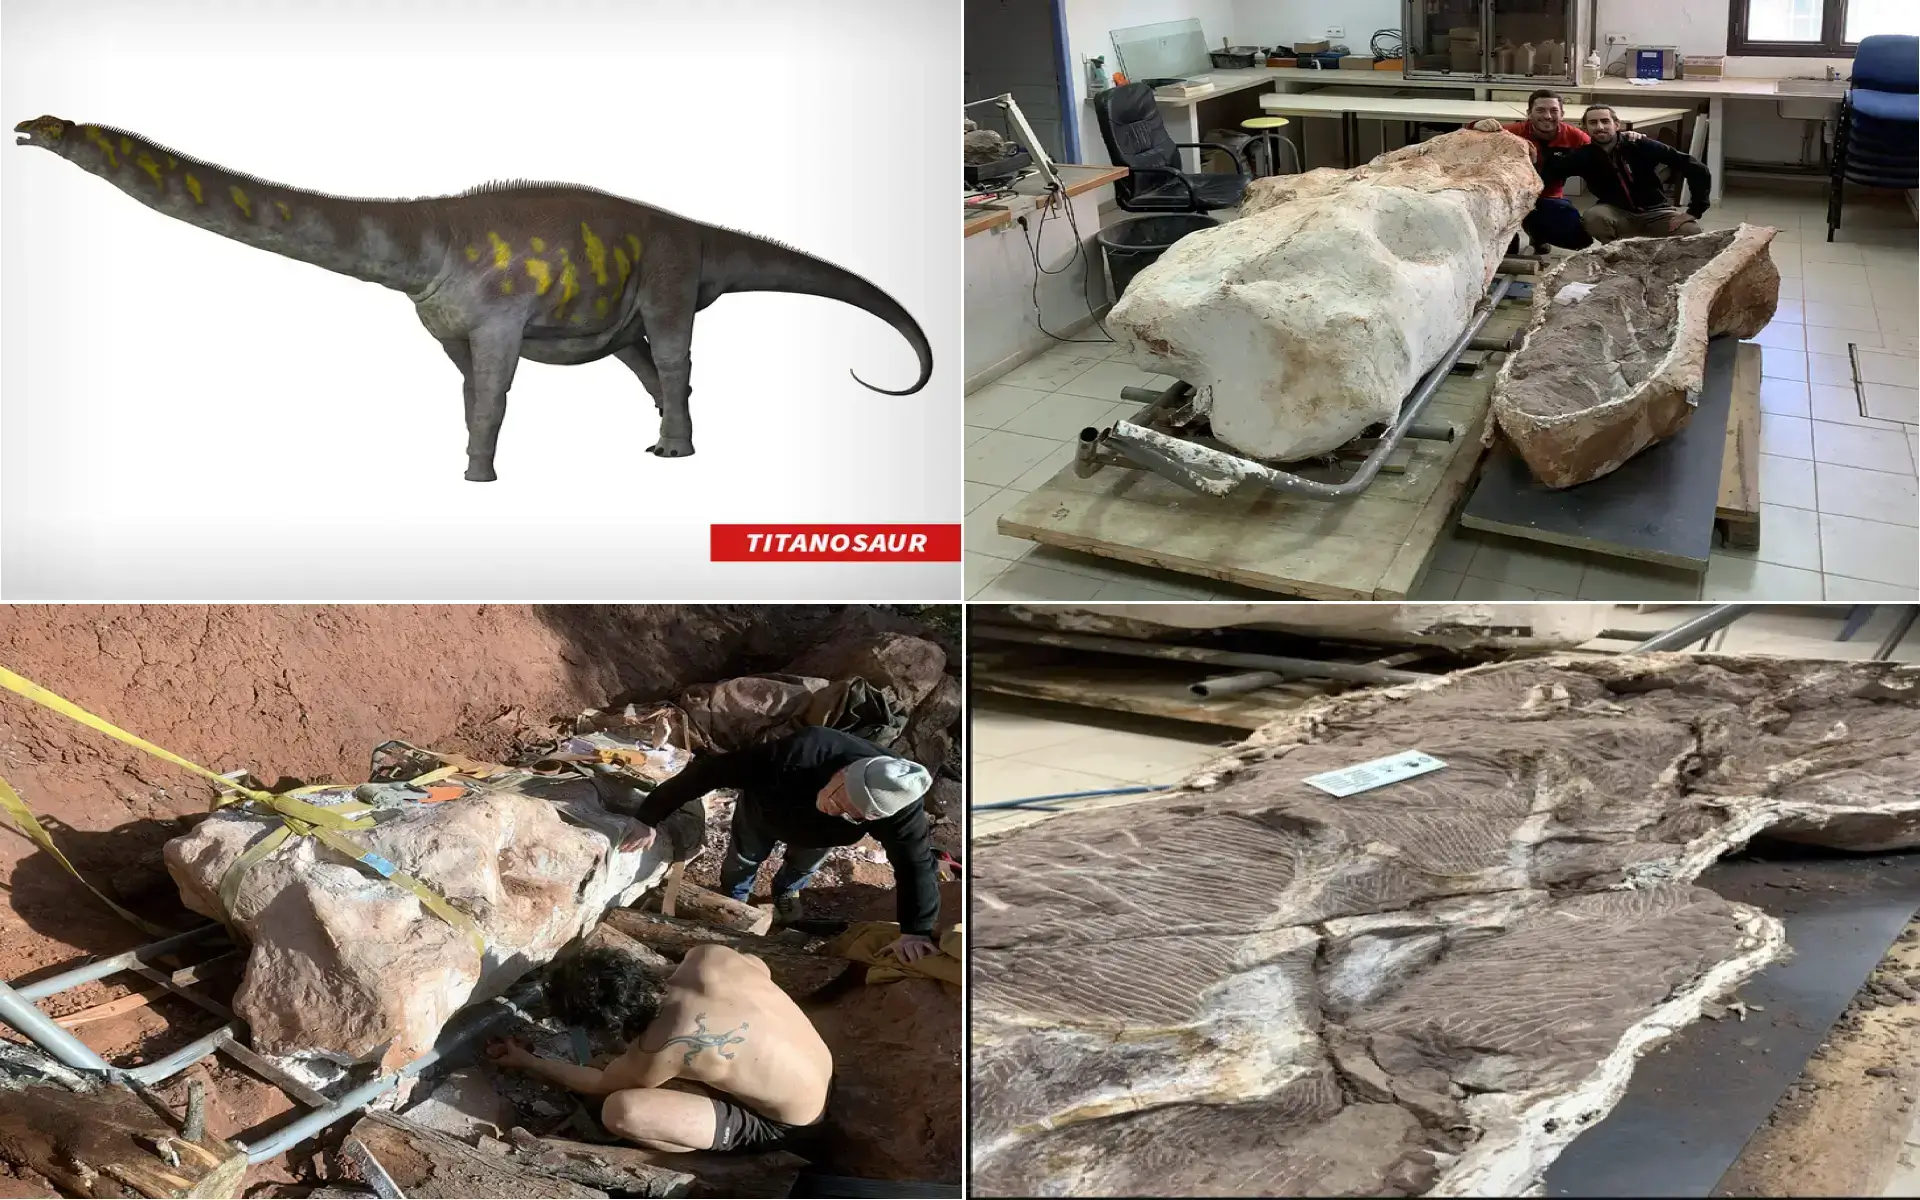 Titanosaurs Skeleton Found